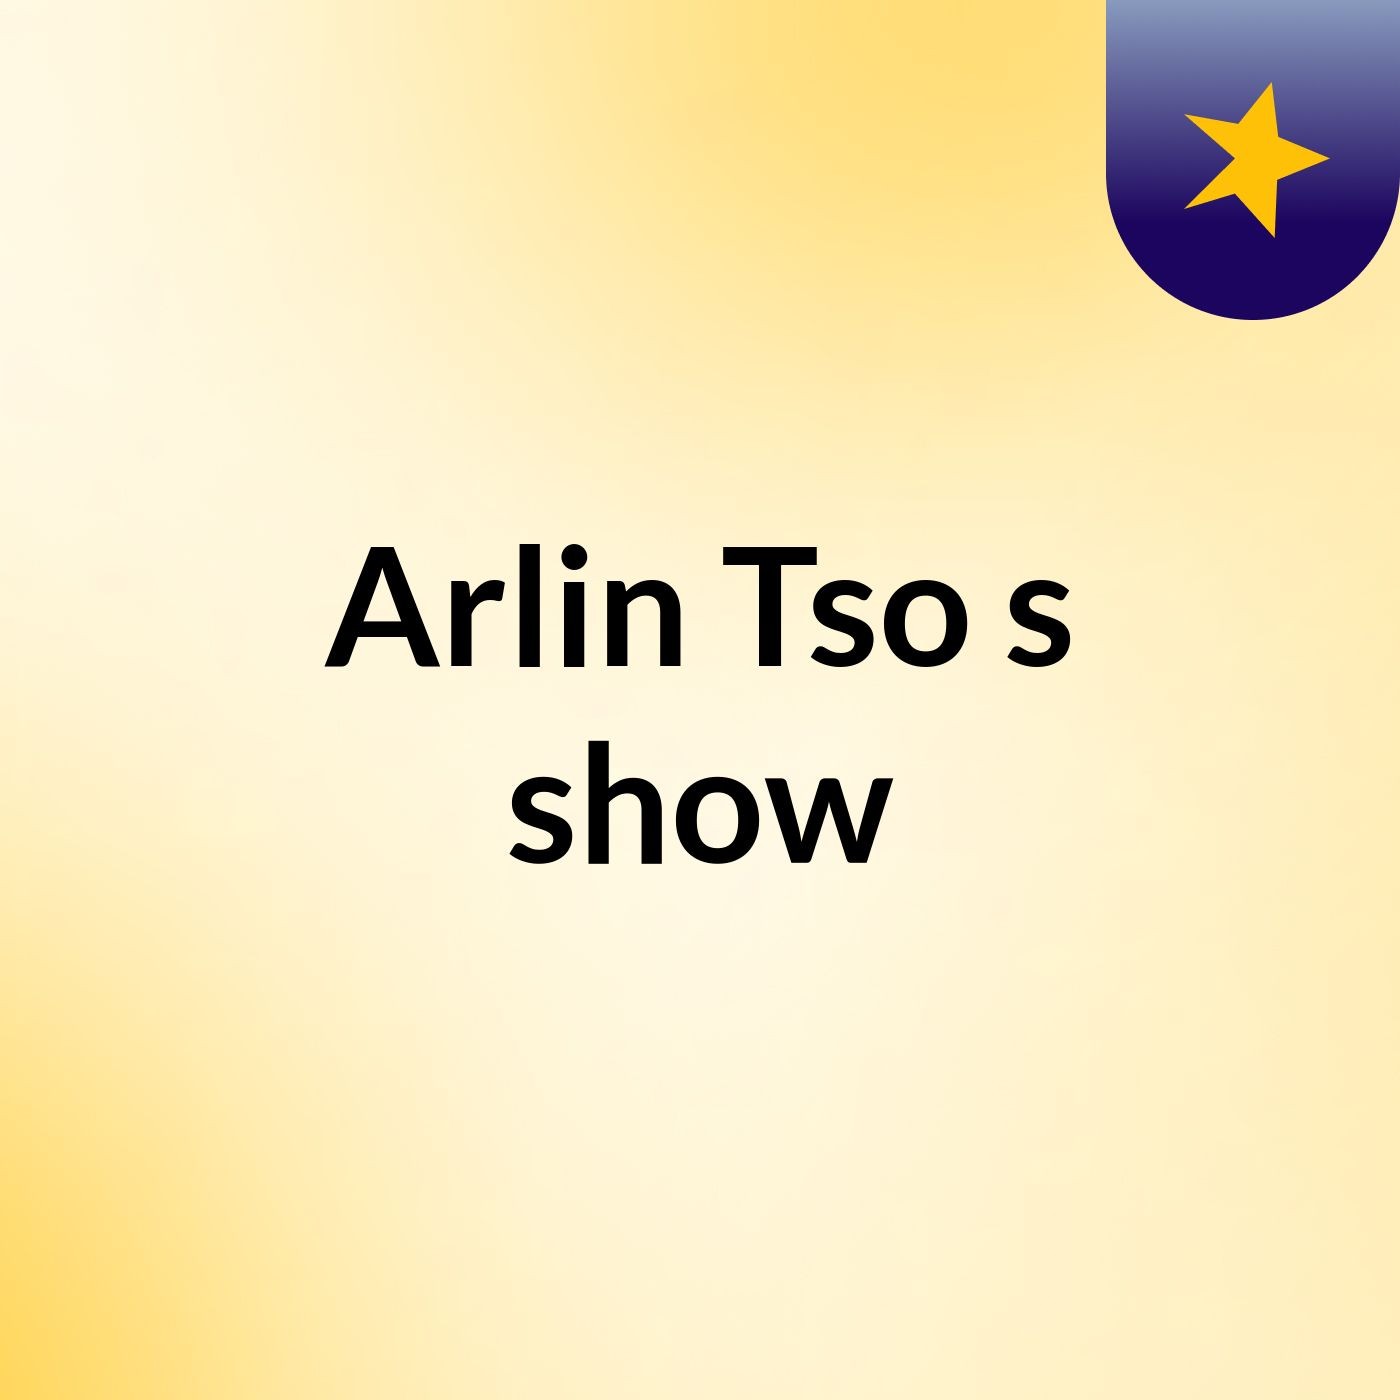 Arlin Tso's show